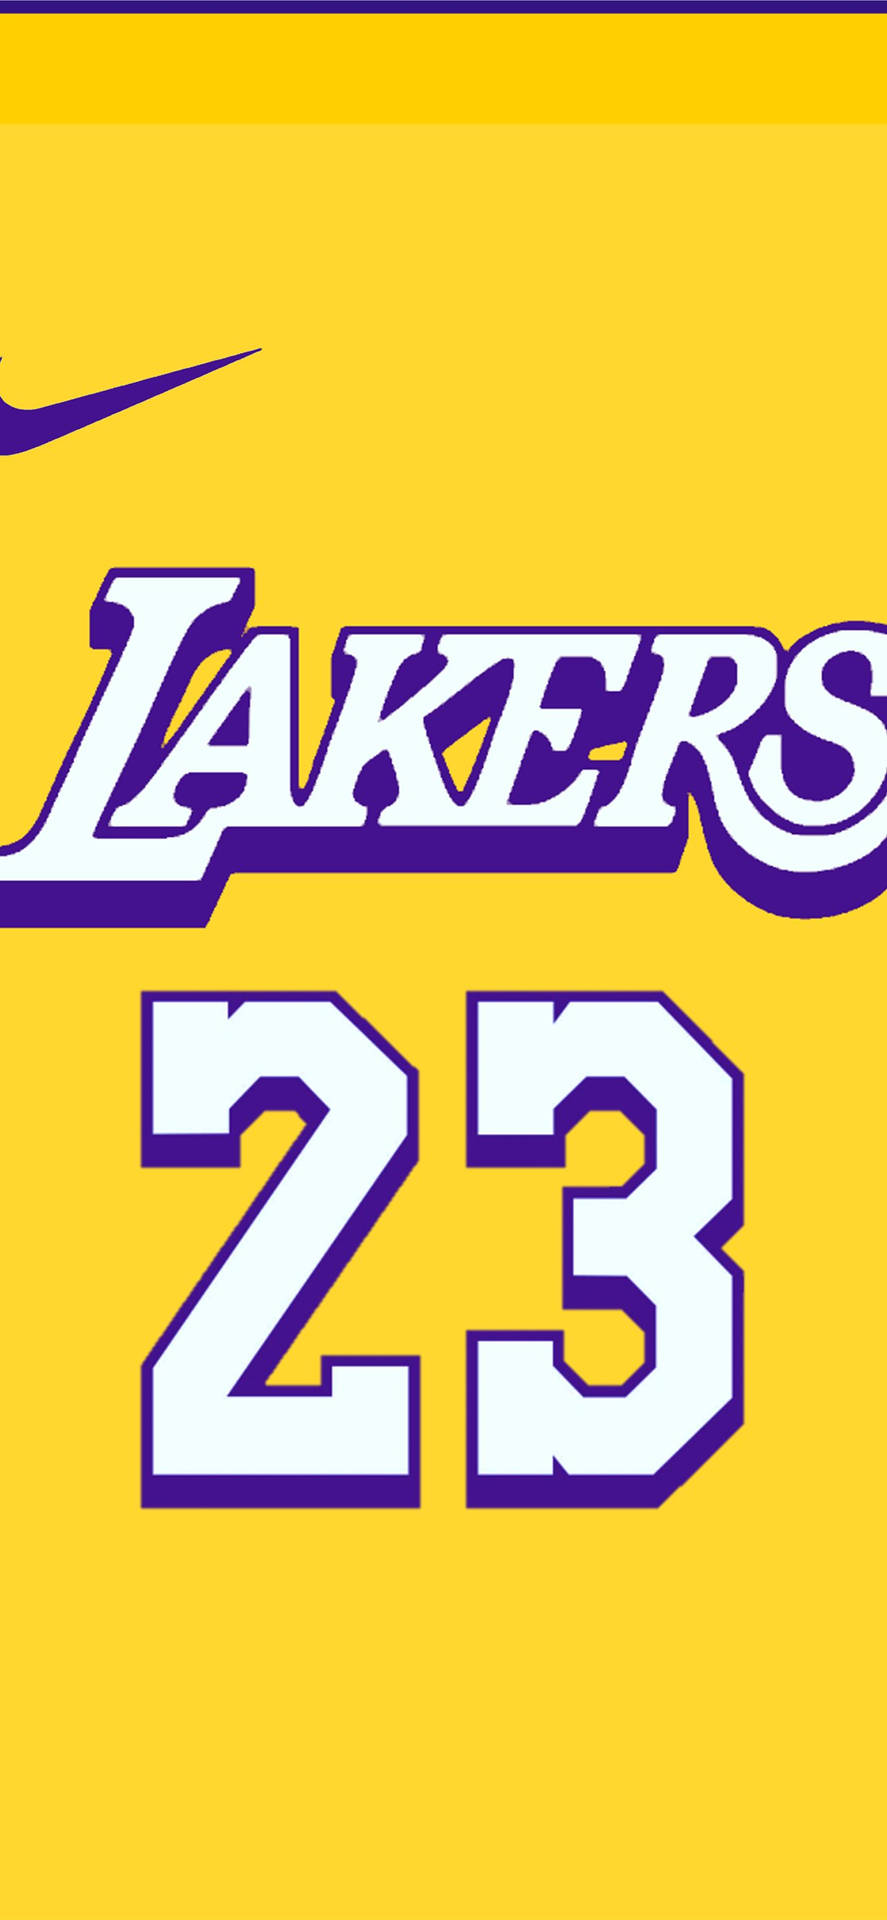 Lakers23 Logotyp På En Gul Bakgrund. Wallpaper